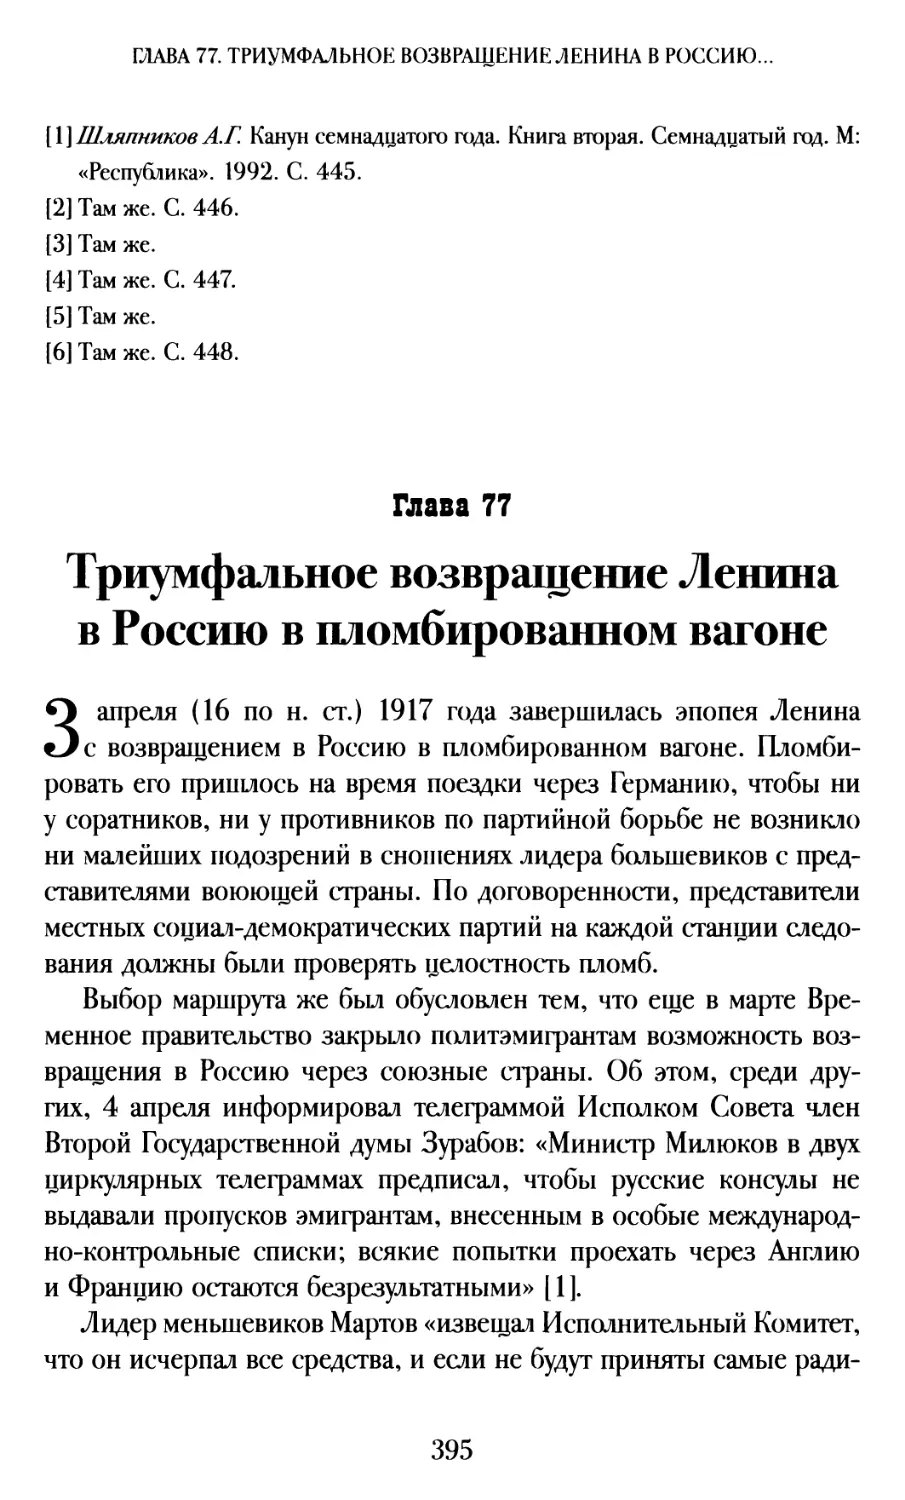 Глава 77. Триумфальное возвращение Ленина в Россию в пломбированном вагоне